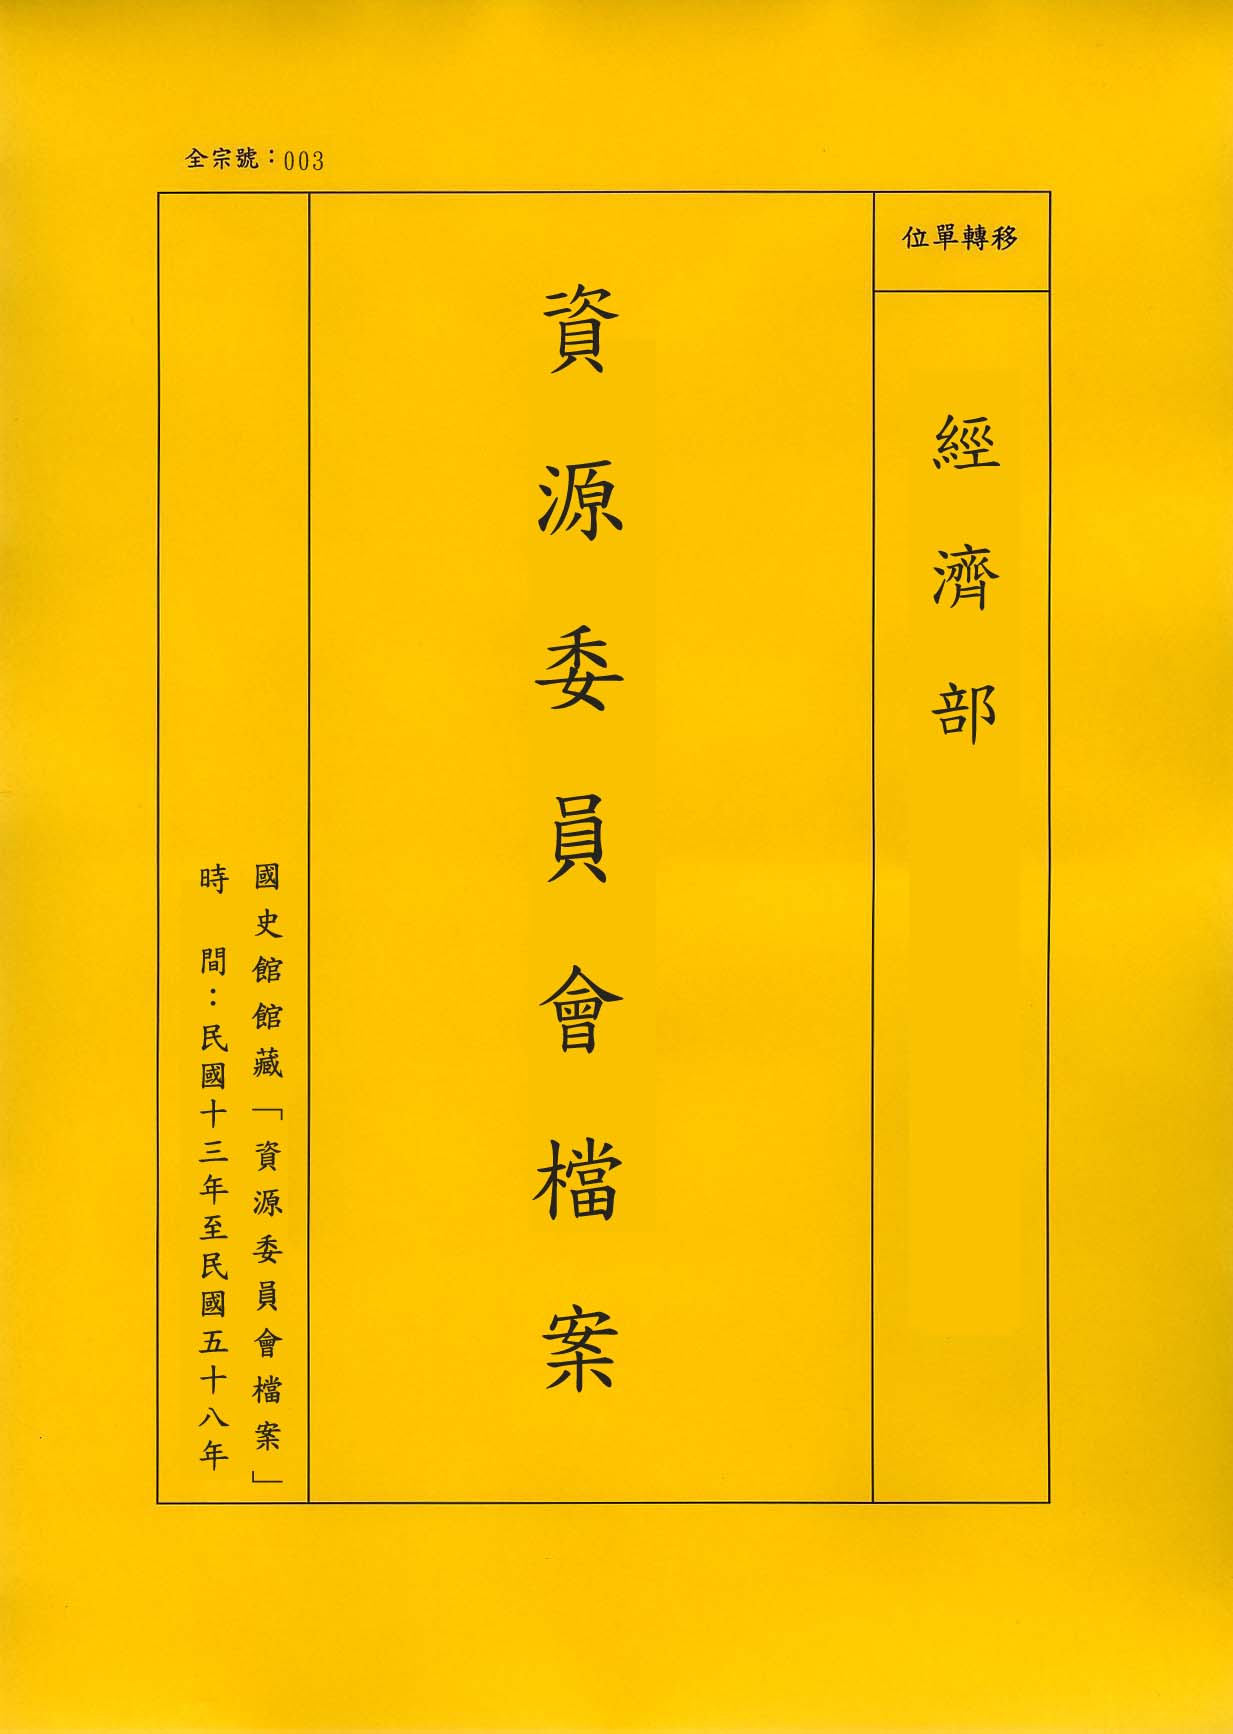 卷名:第一區特種礦產管理處廣州辦事處內地運輸護照(003-010305-0125)